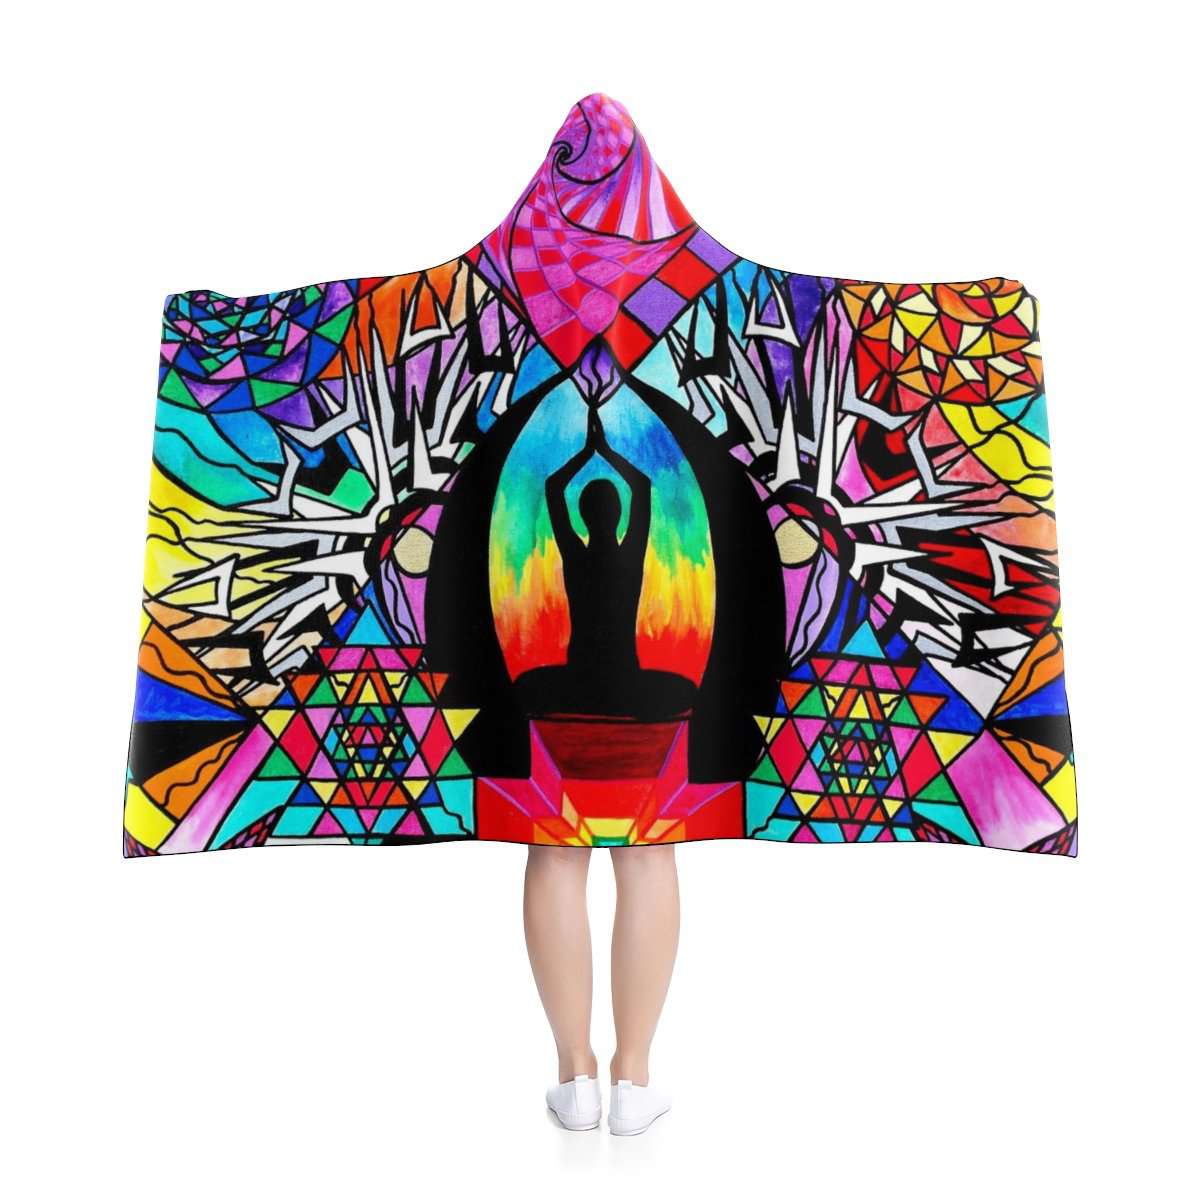 Meditation Aid - Hooded Blanket